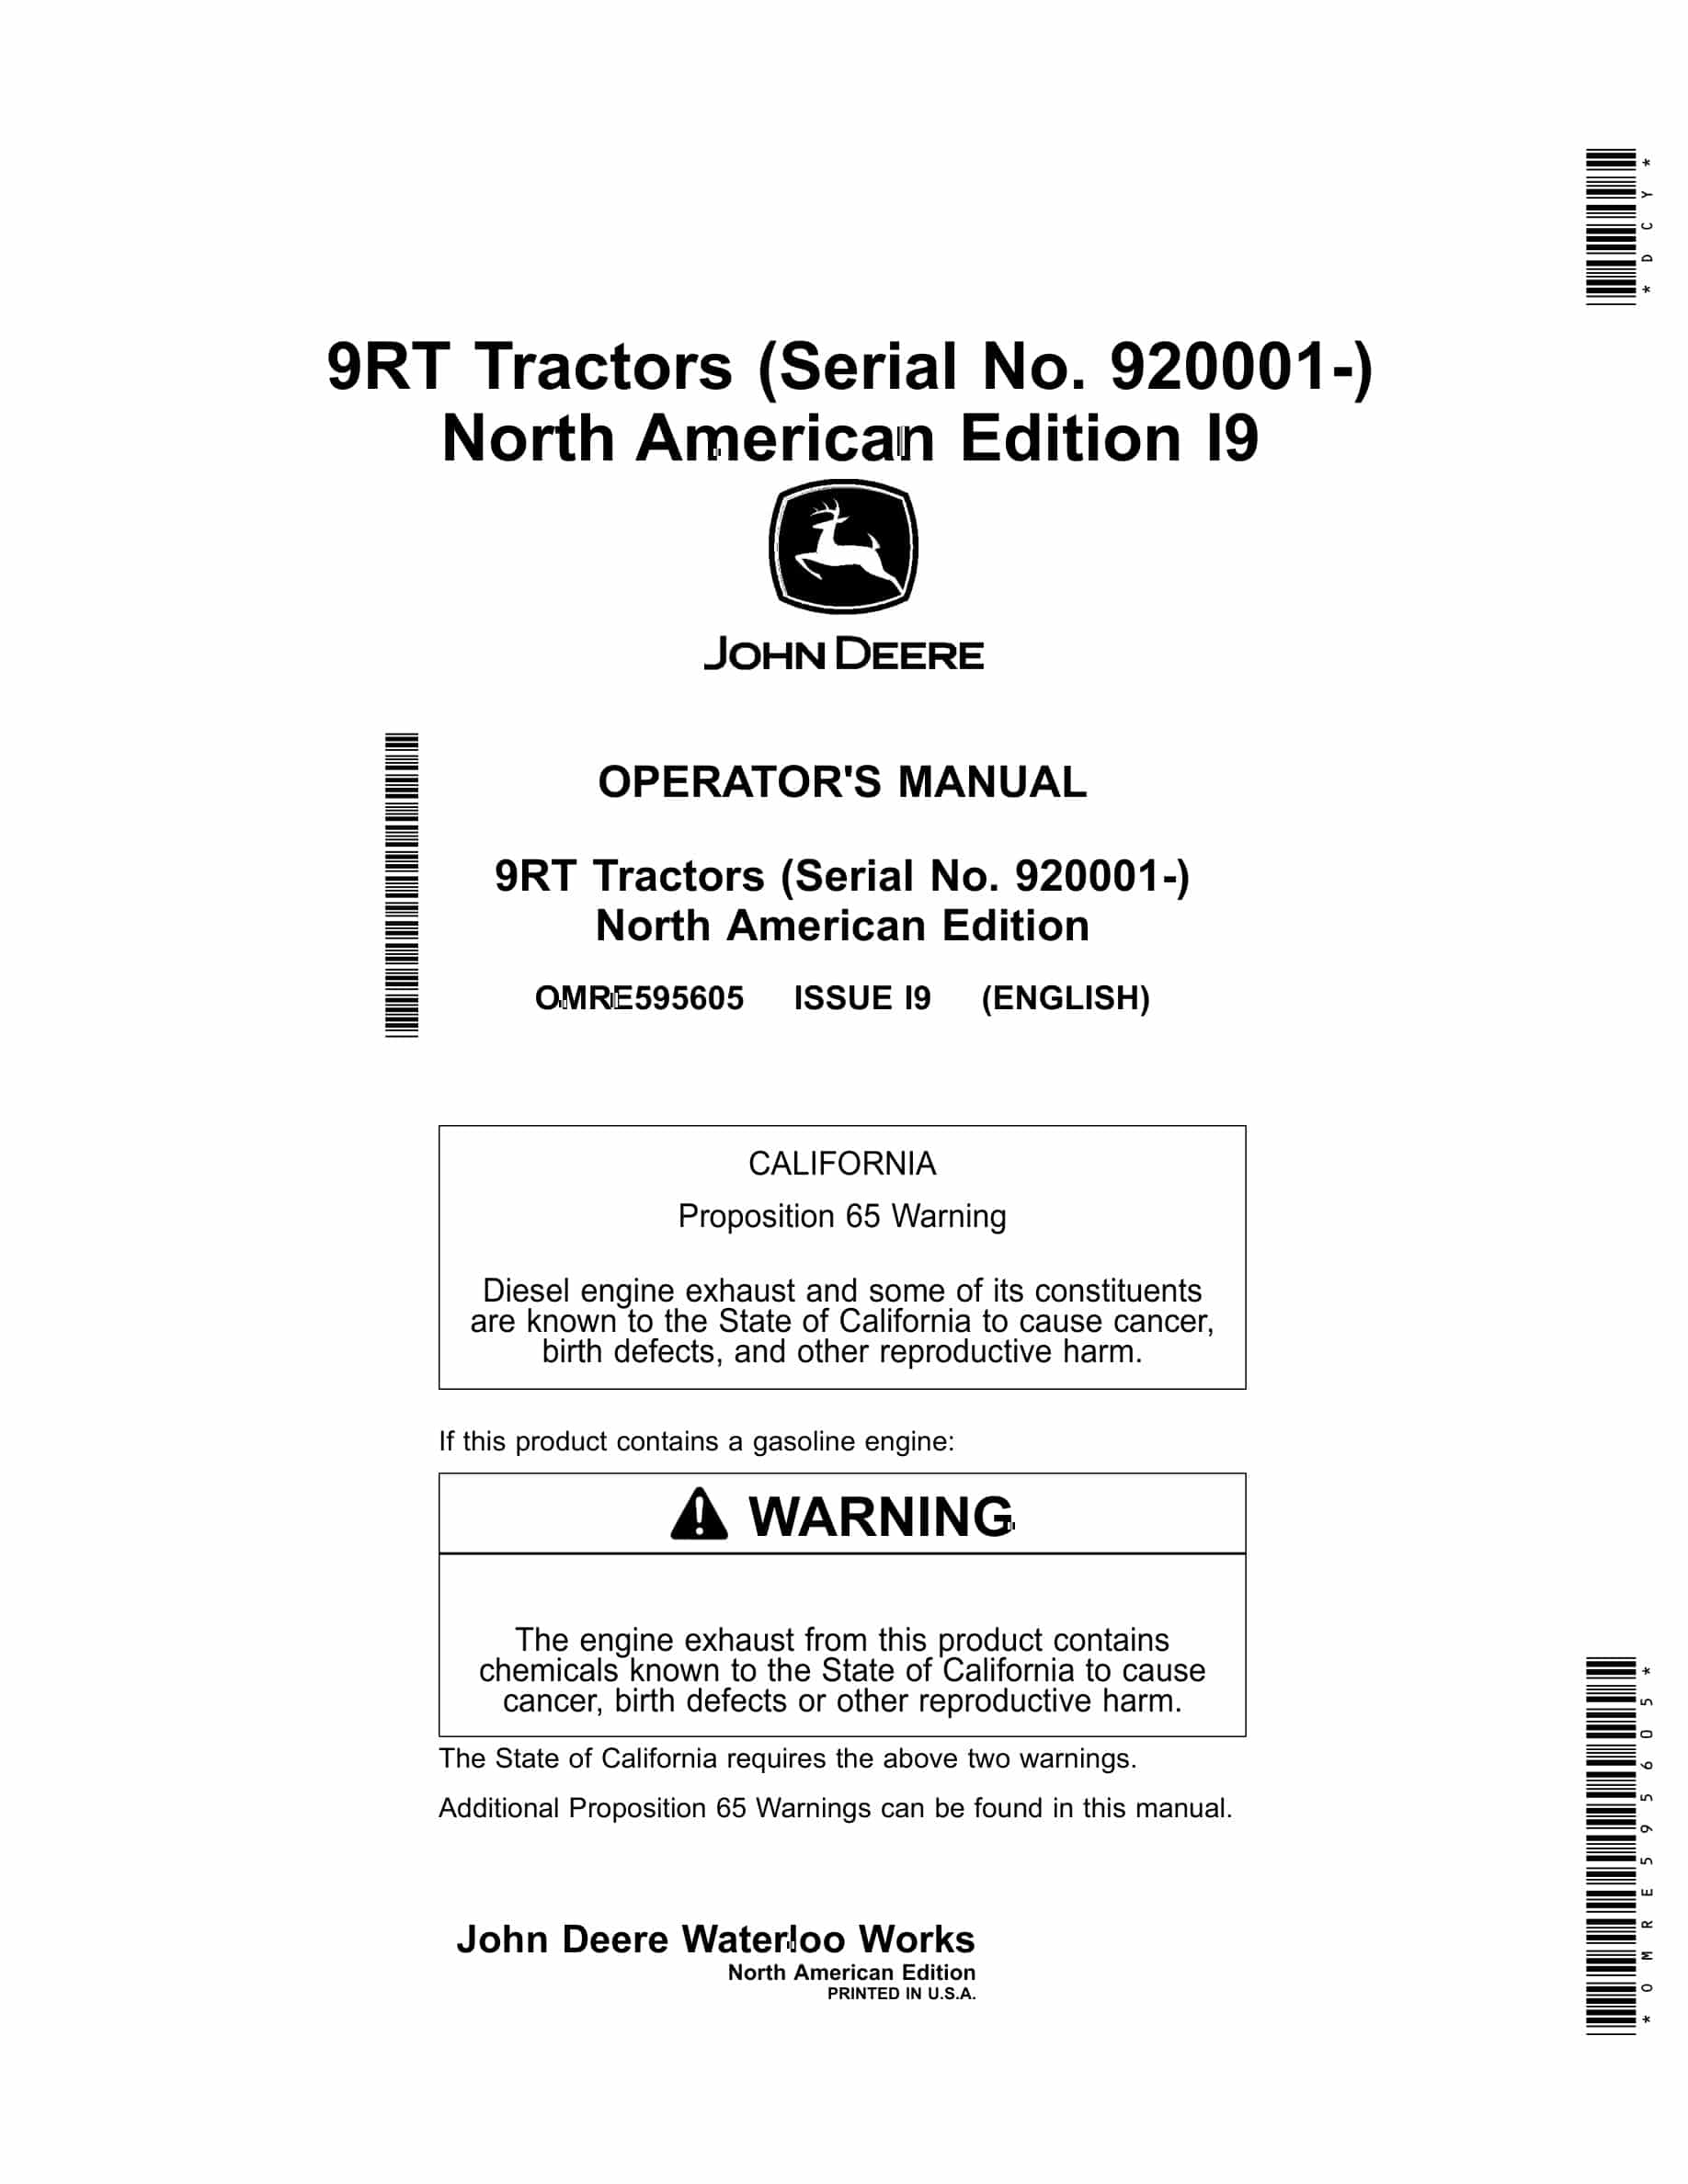 John Deere 9RT Tractor Operator Manual OMRE595605-1